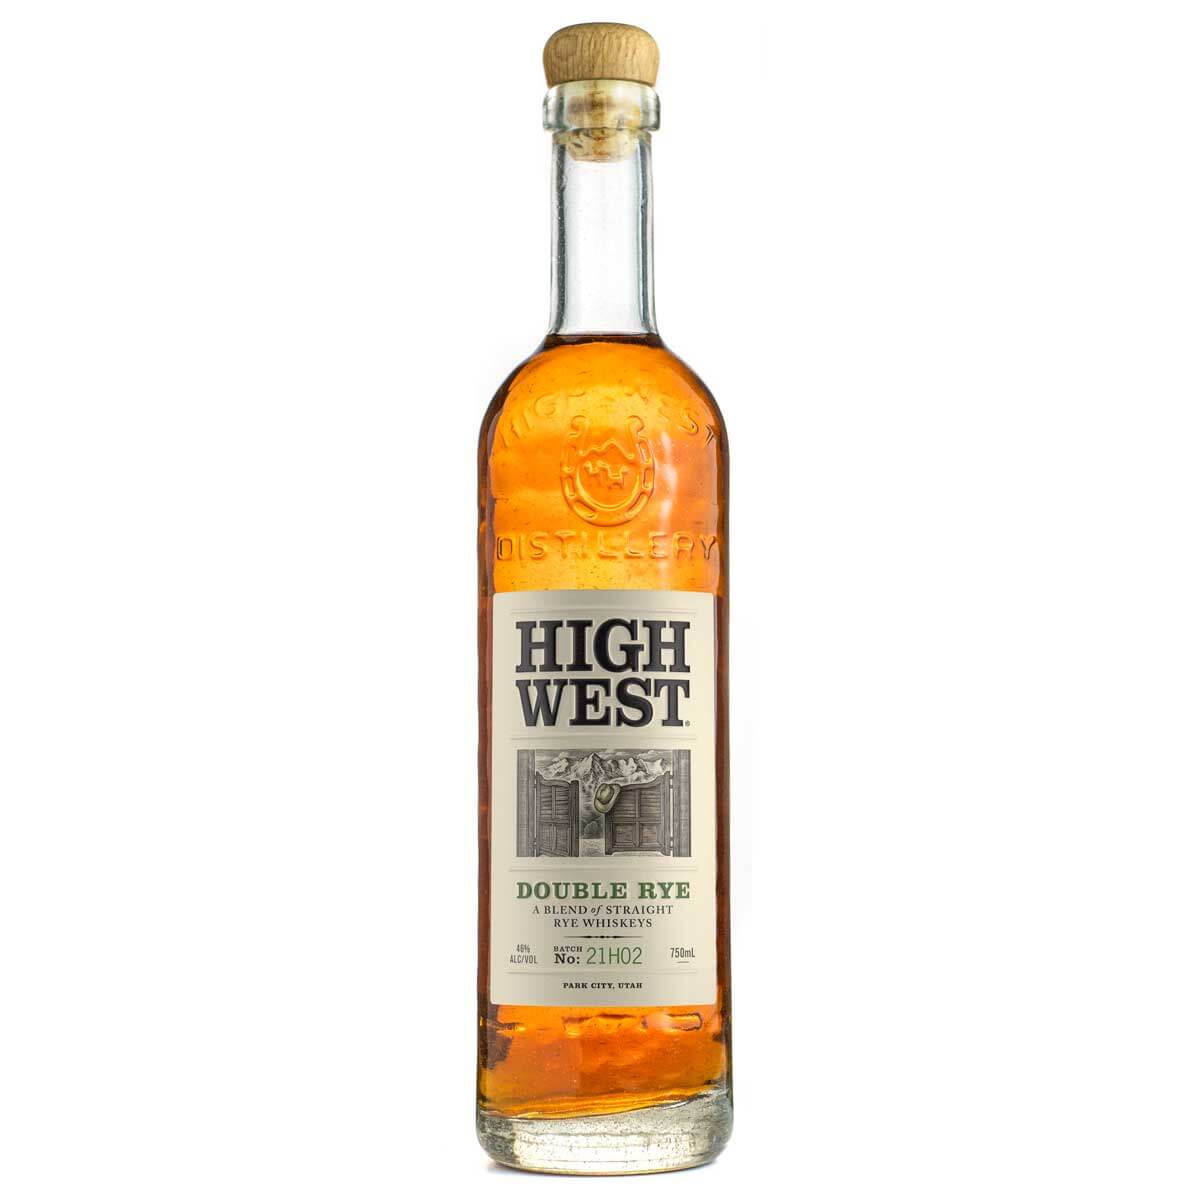 High West Double Rye bottle